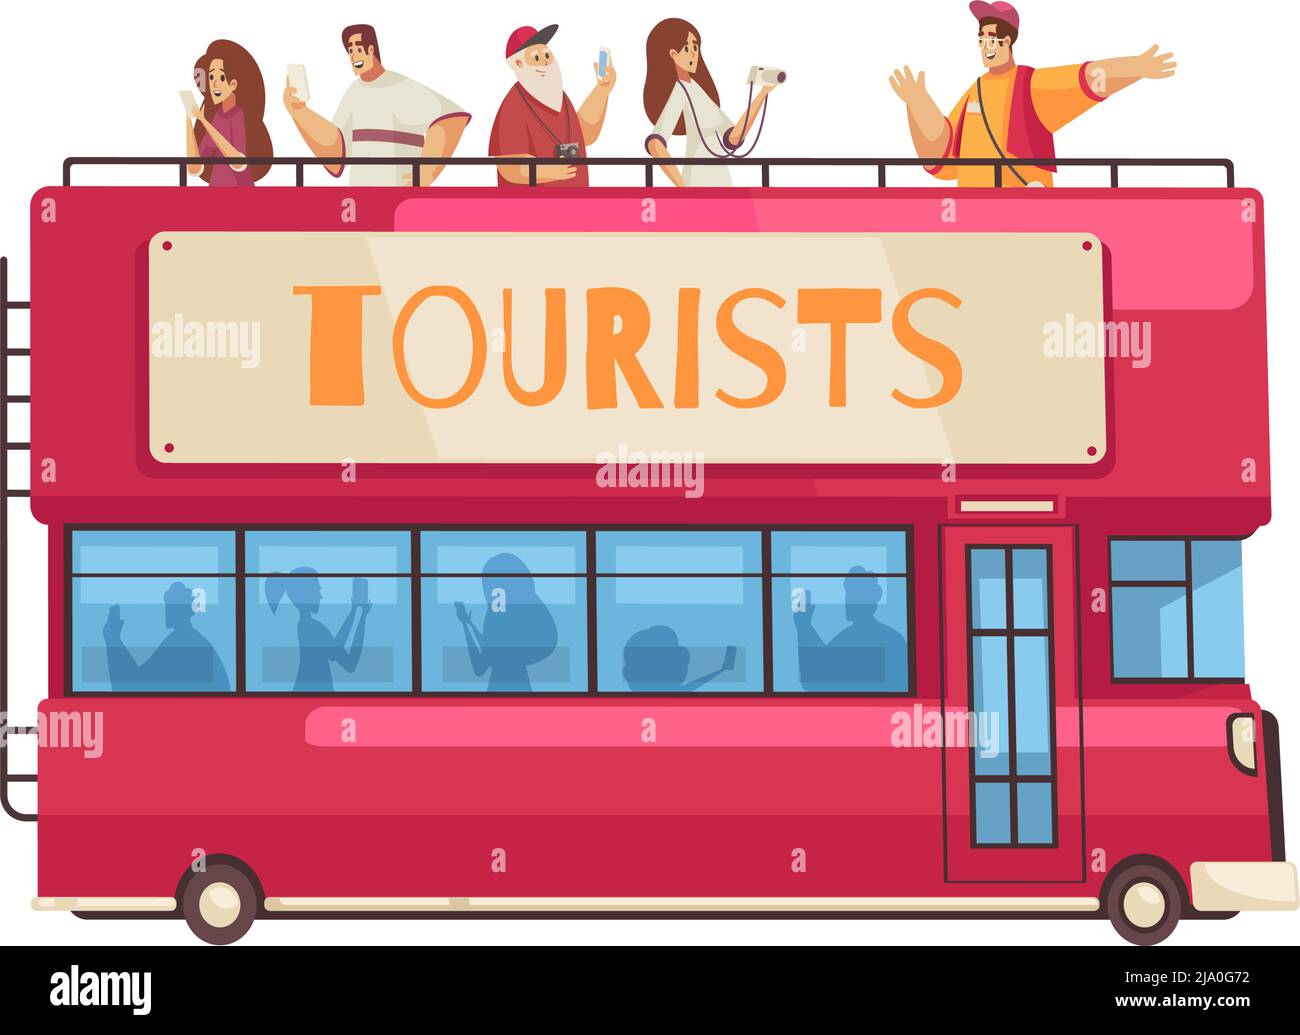 Guide Exkursion Zusammensetzung mit Zeichen des Führers und Gruppe von Touristen auf der Sightseeing-Bus Vektor-Illustration Stock Vektor